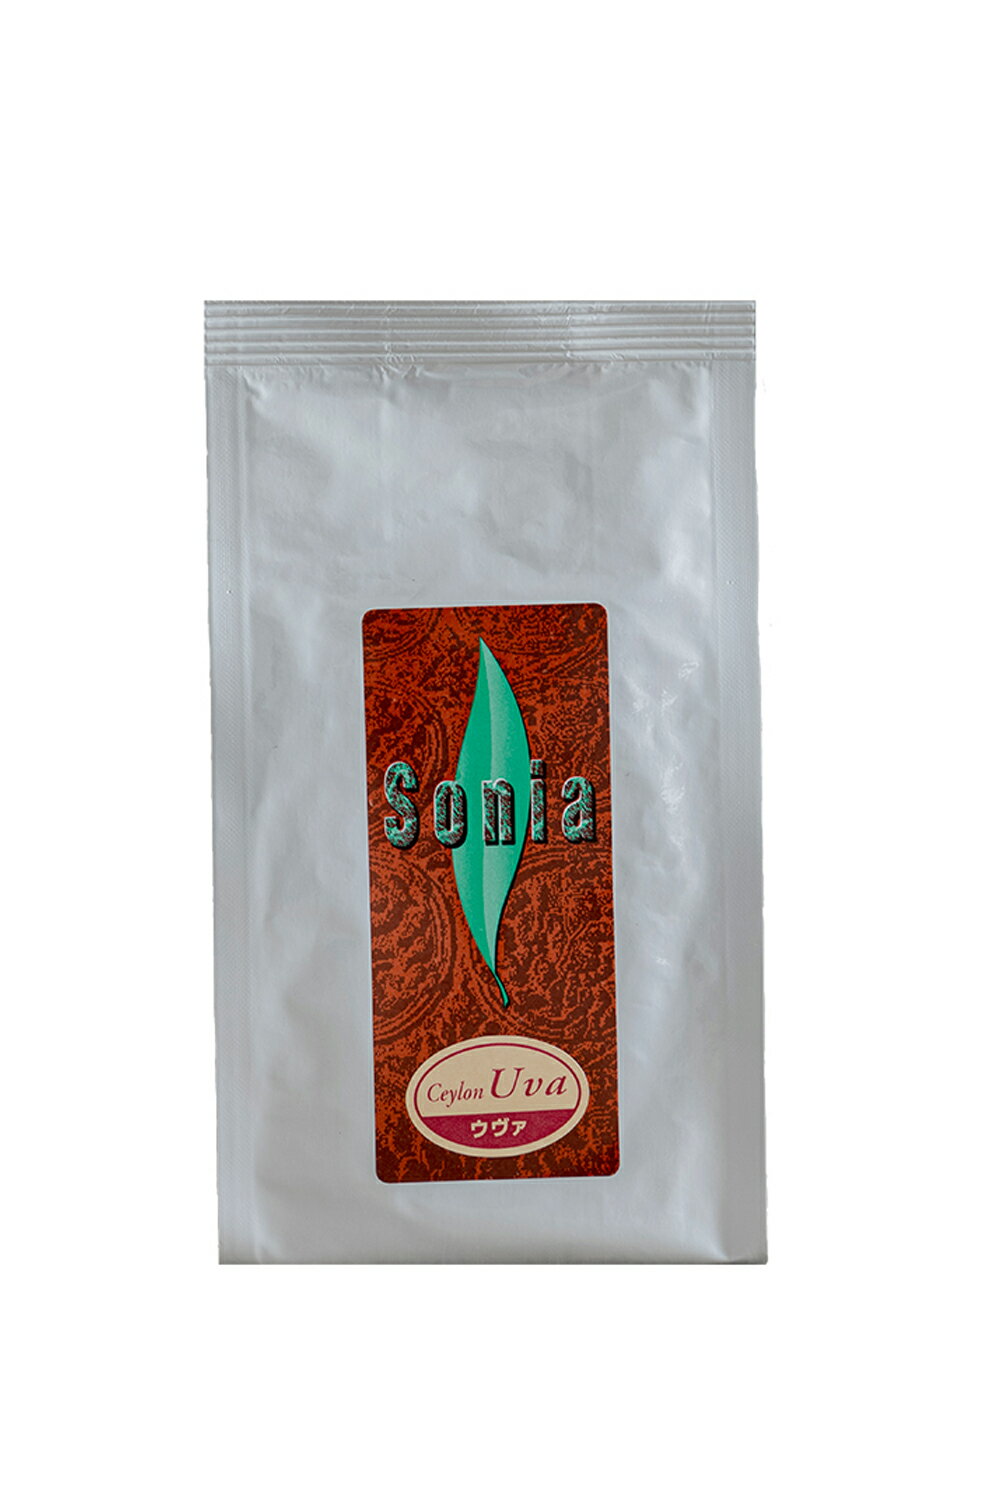 有機【ウヴァ】オーガニック 高級紅茶100g 茶葉等級 BOP品質重視のアルミ袋入り産地 スリランカ セカンドフラッシュ